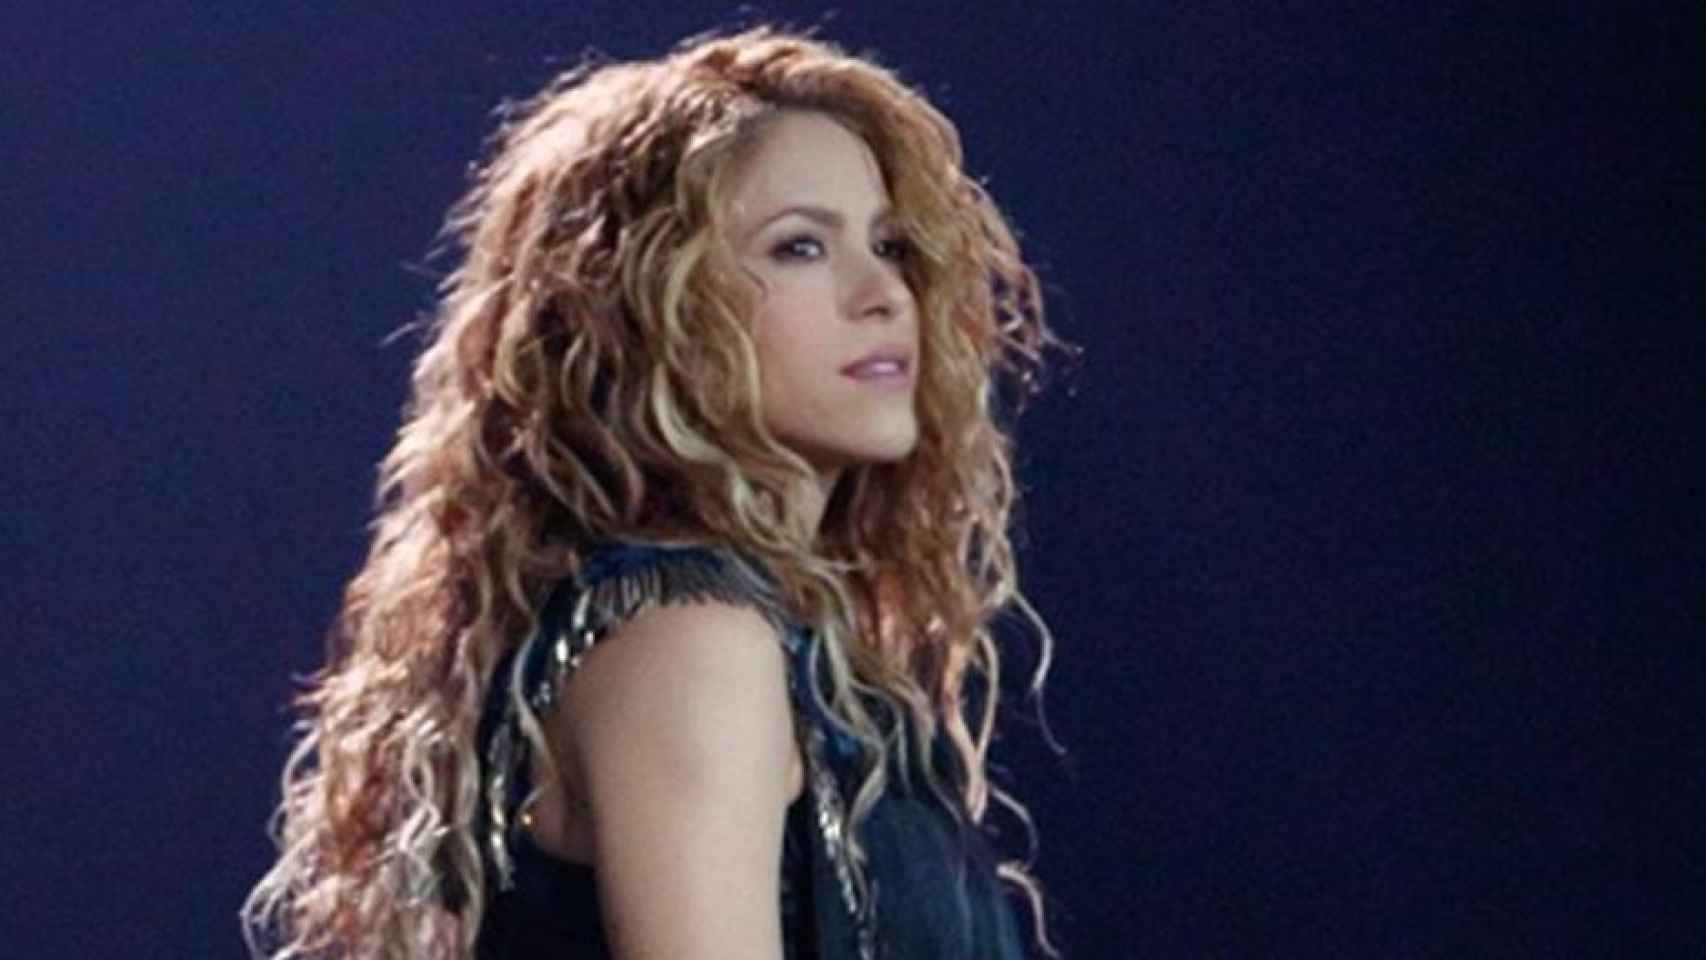 Foto de Shakira durante uno de sus conciertos / Instagram